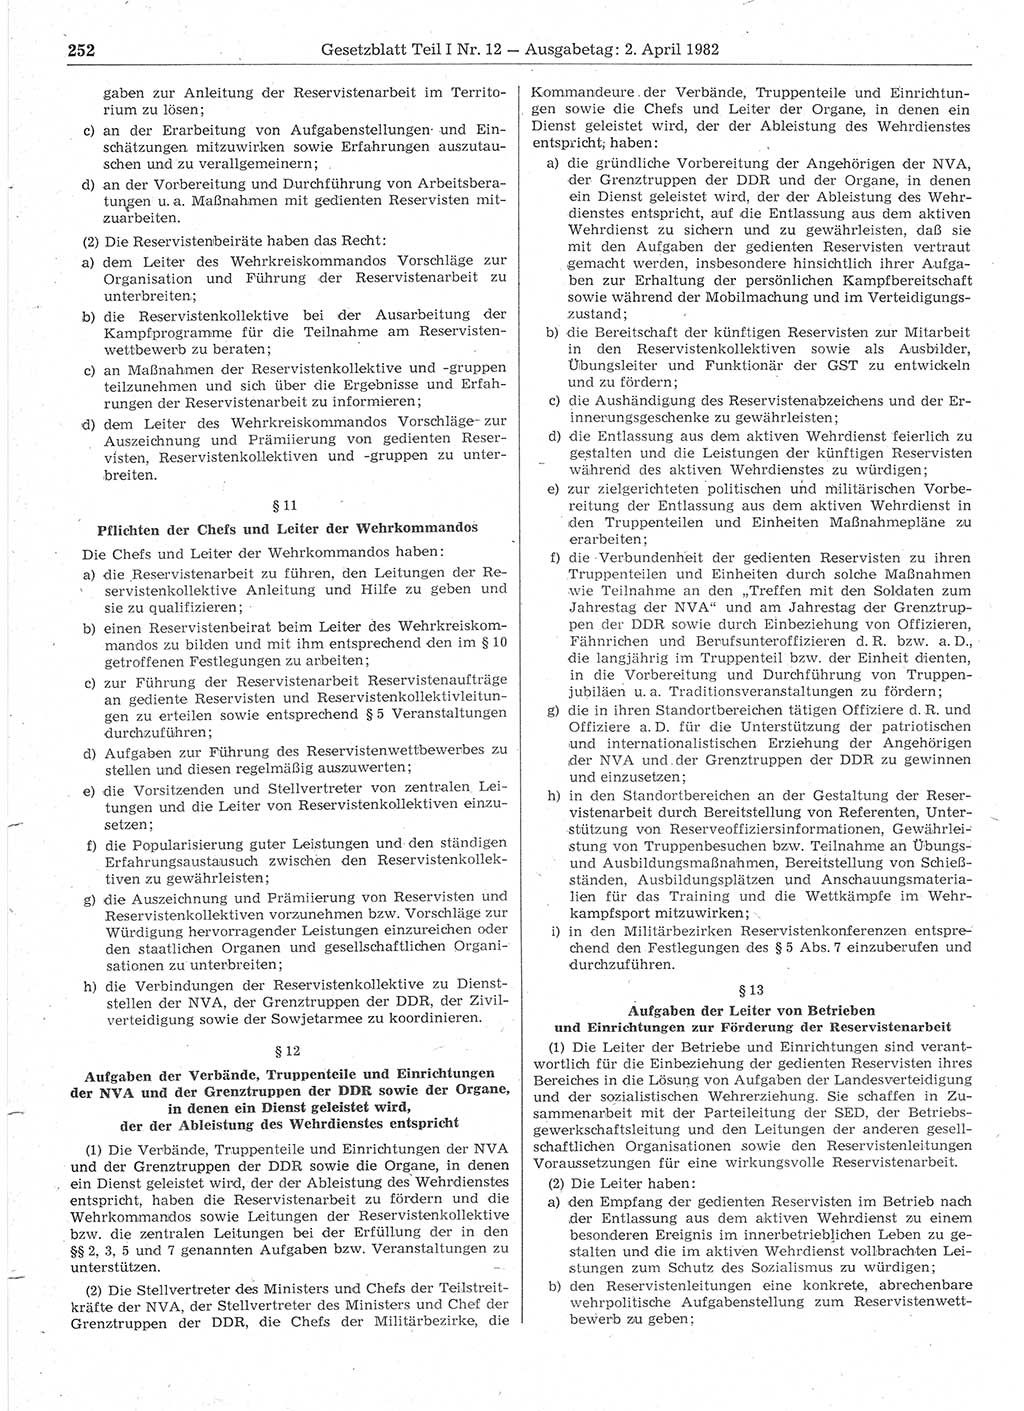 Gesetzblatt (GBl.) der Deutschen Demokratischen Republik (DDR) Teil Ⅰ 1982, Seite 252 (GBl. DDR Ⅰ 1982, S. 252)